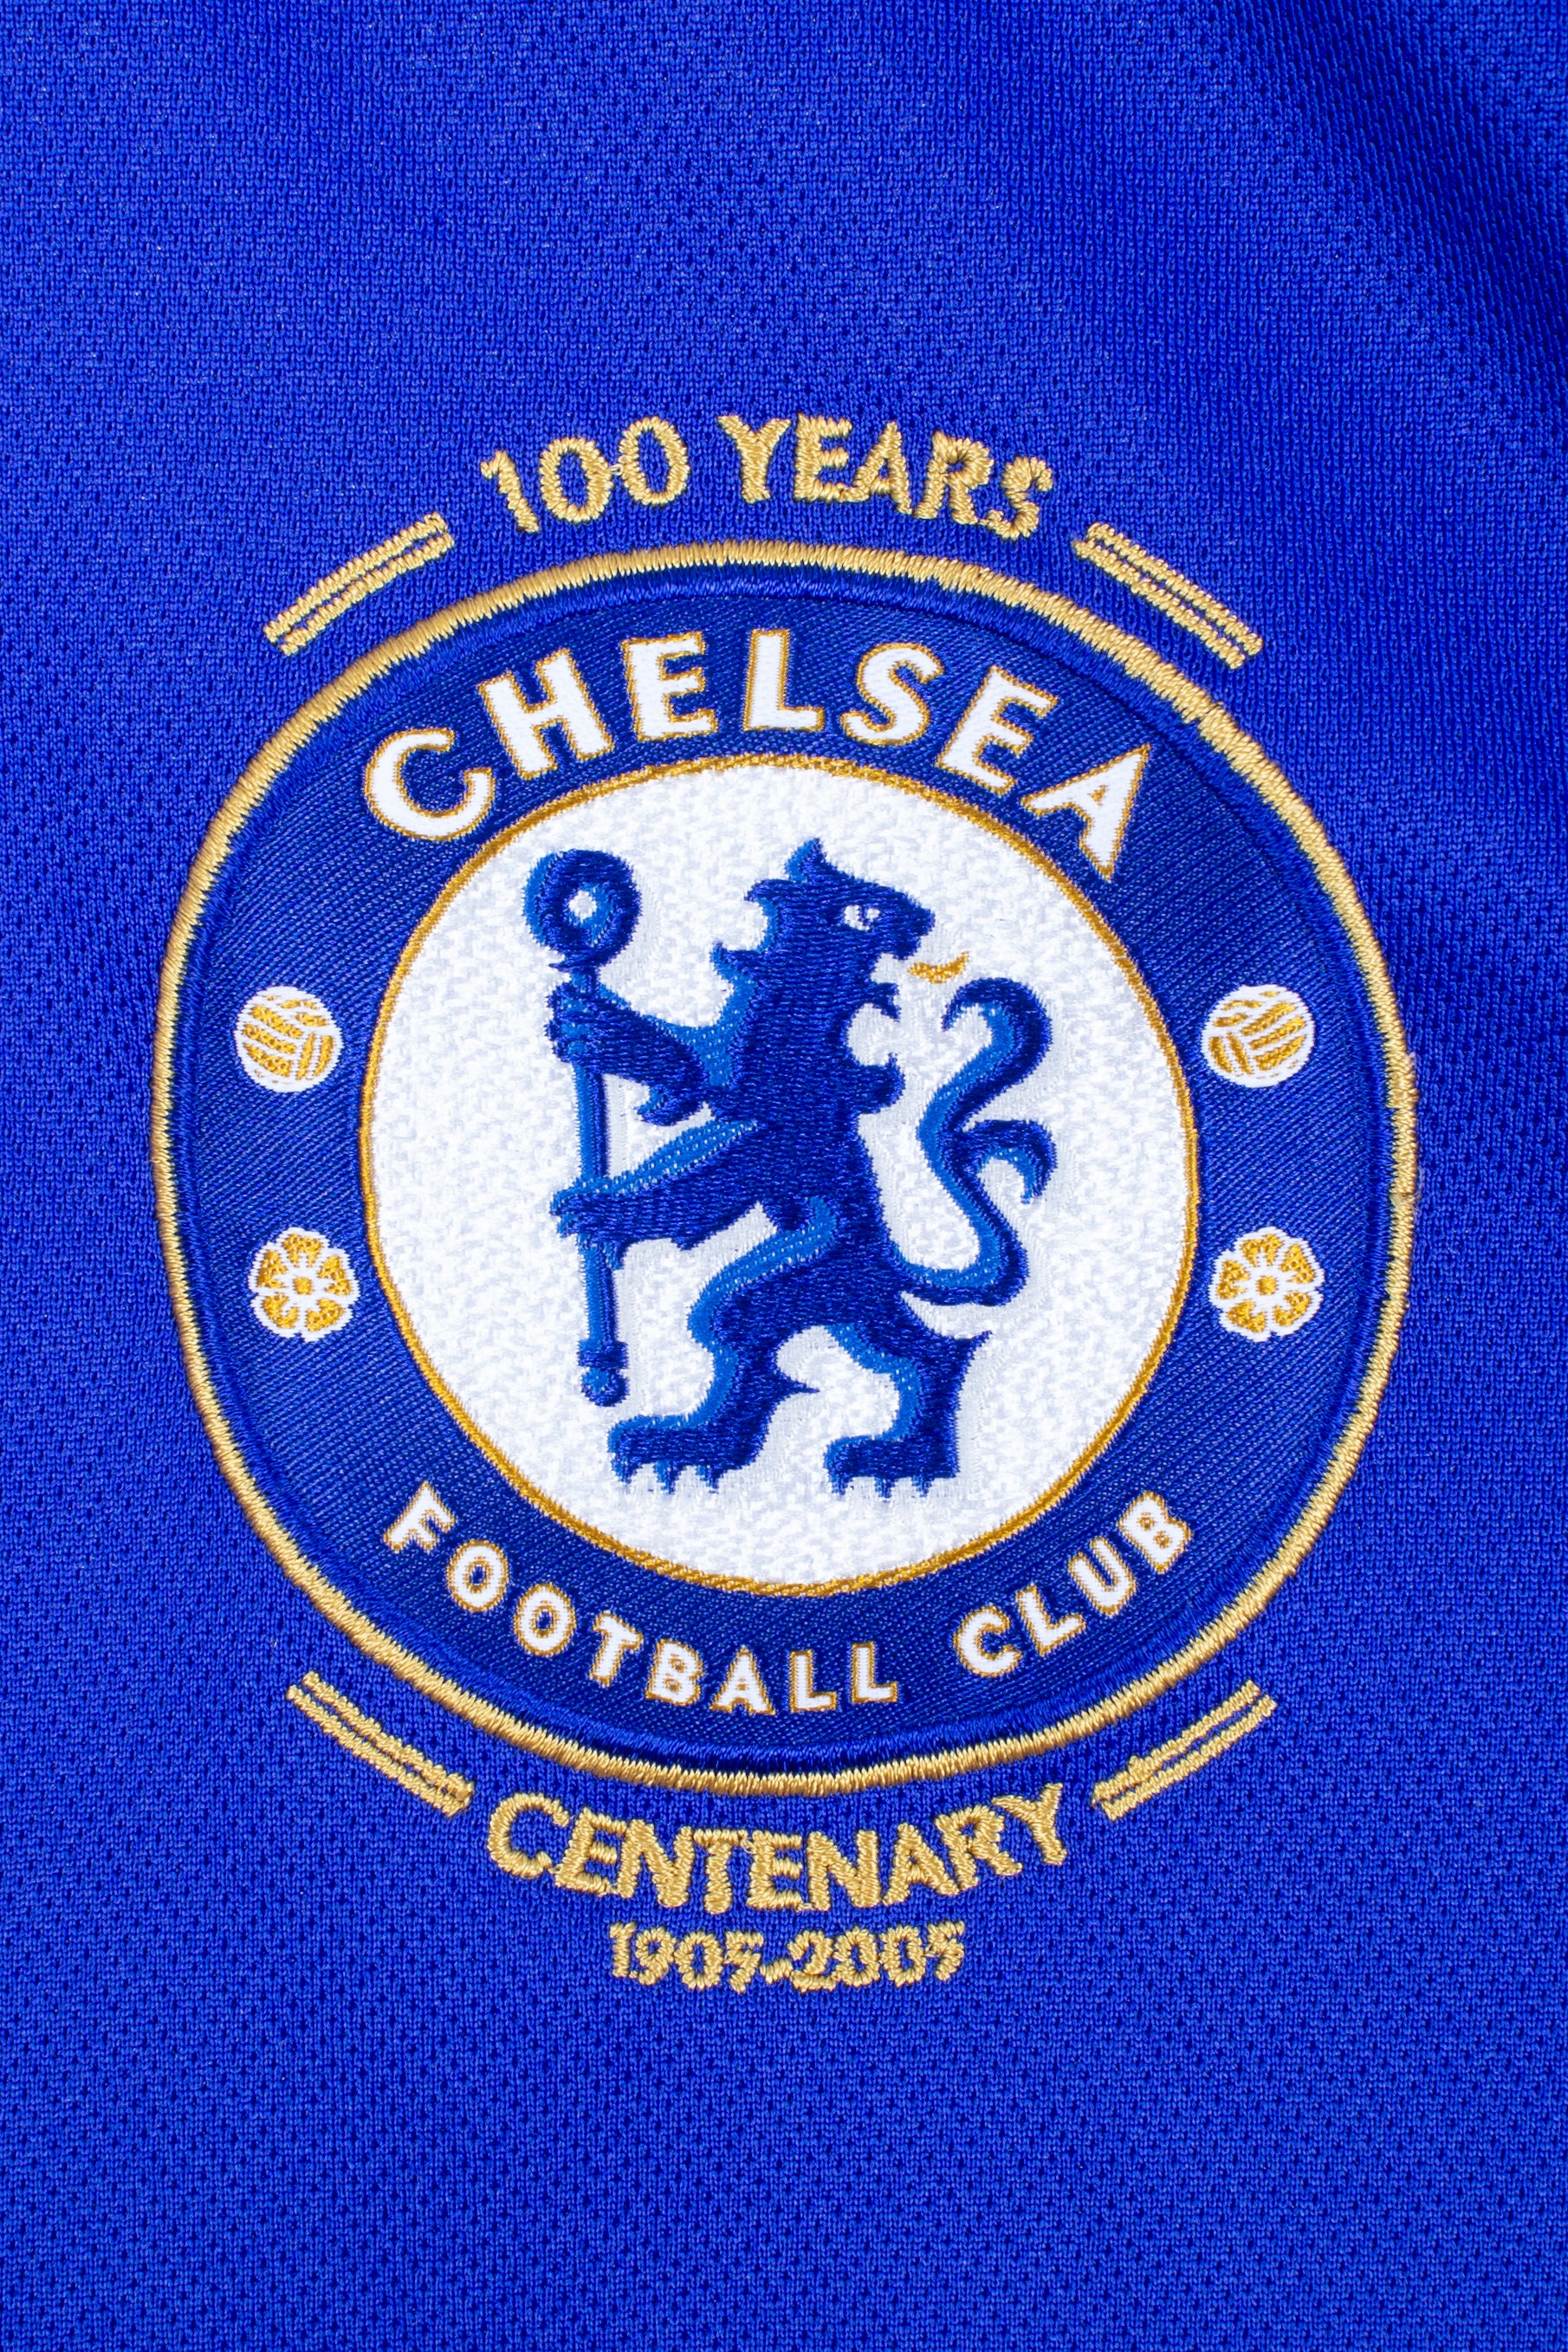 Chelsea 2005/06 Centenary Home Shirt (XL)